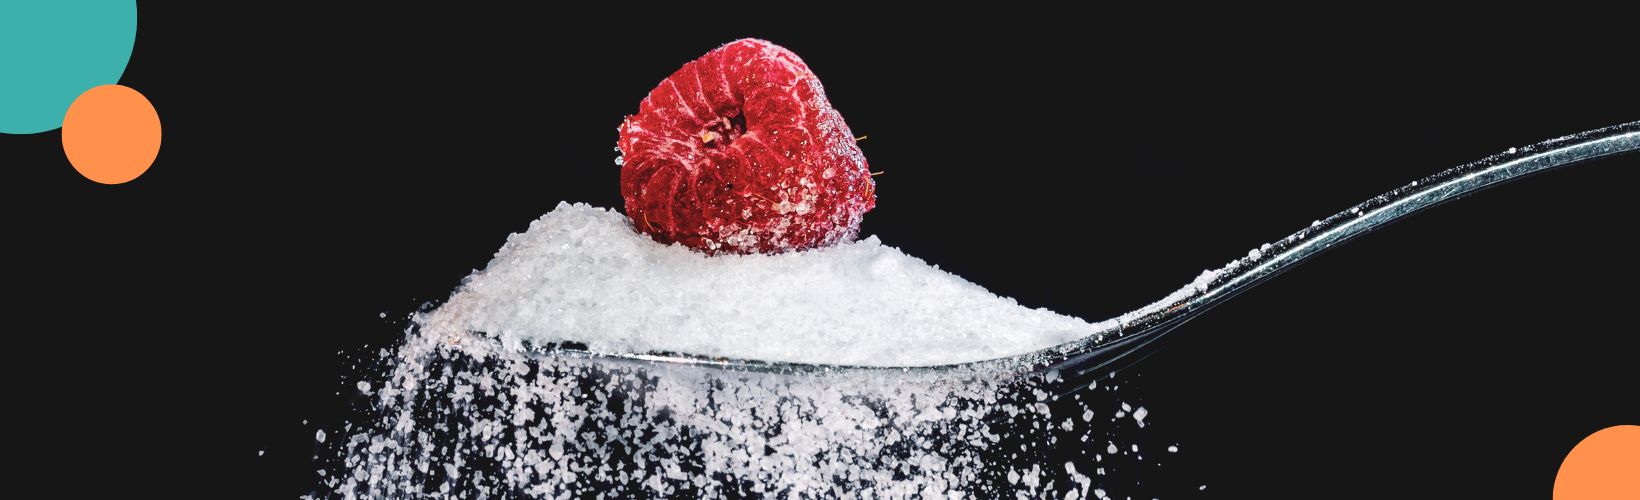 Czym zastąpić cukier? Czyli zdrowe zamienniki cukru, czym słodzić, alternatywa dla cukru, zamienniki cukru, co zamiast cukru